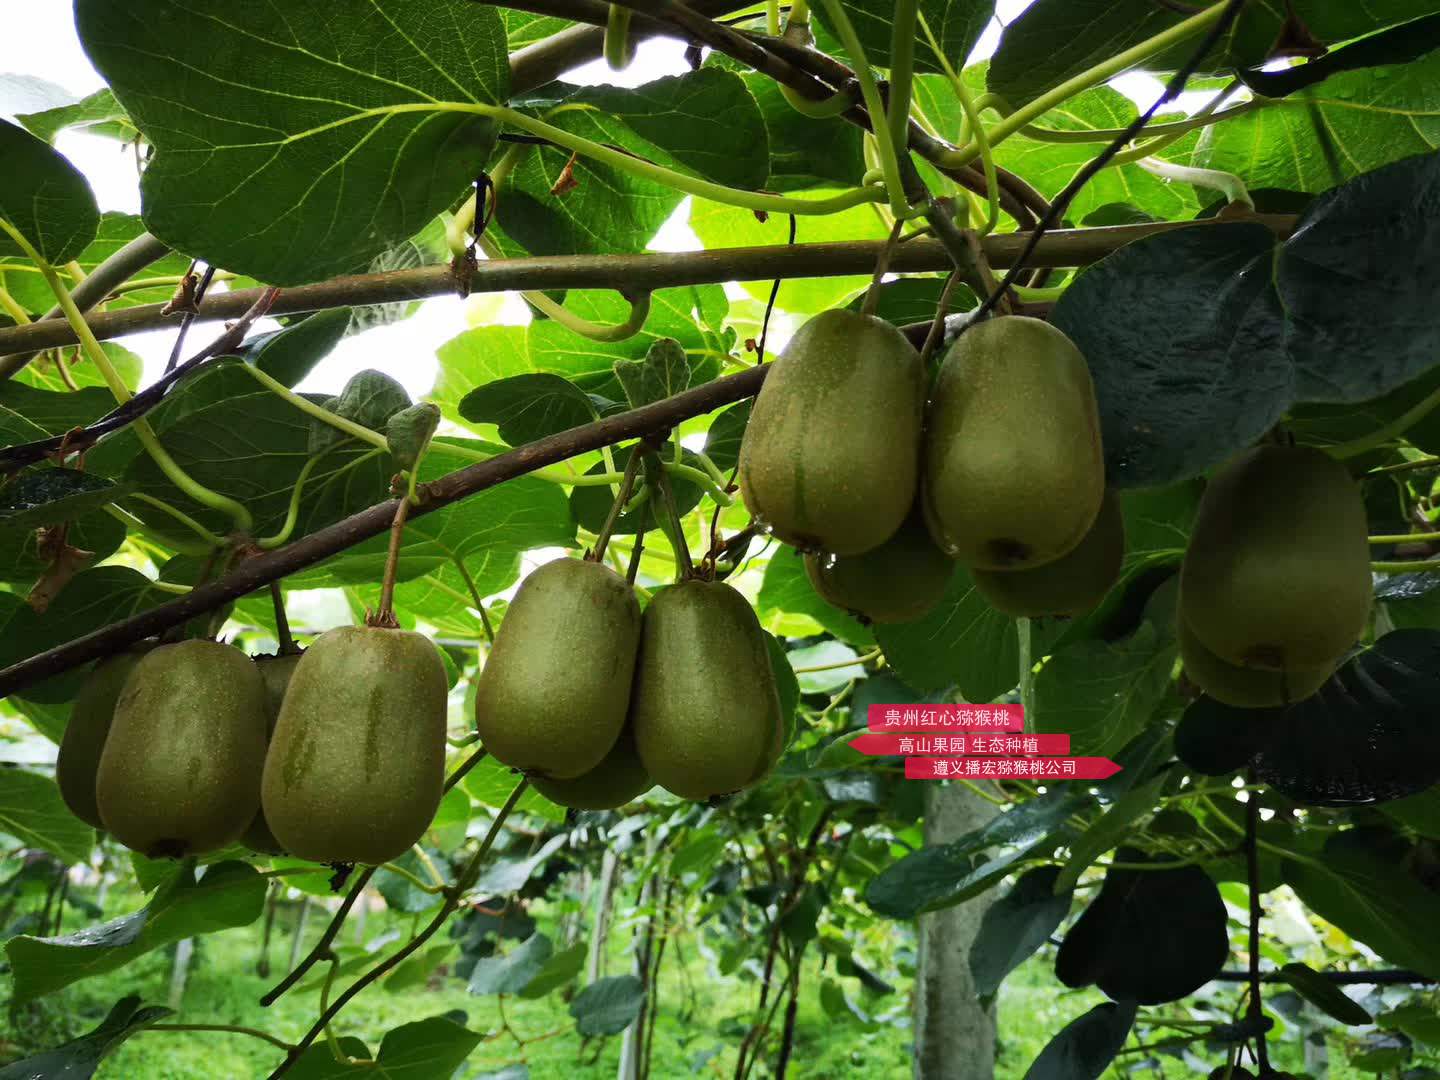 2019年贵州有机红心猕猴桃开始批量供应市场